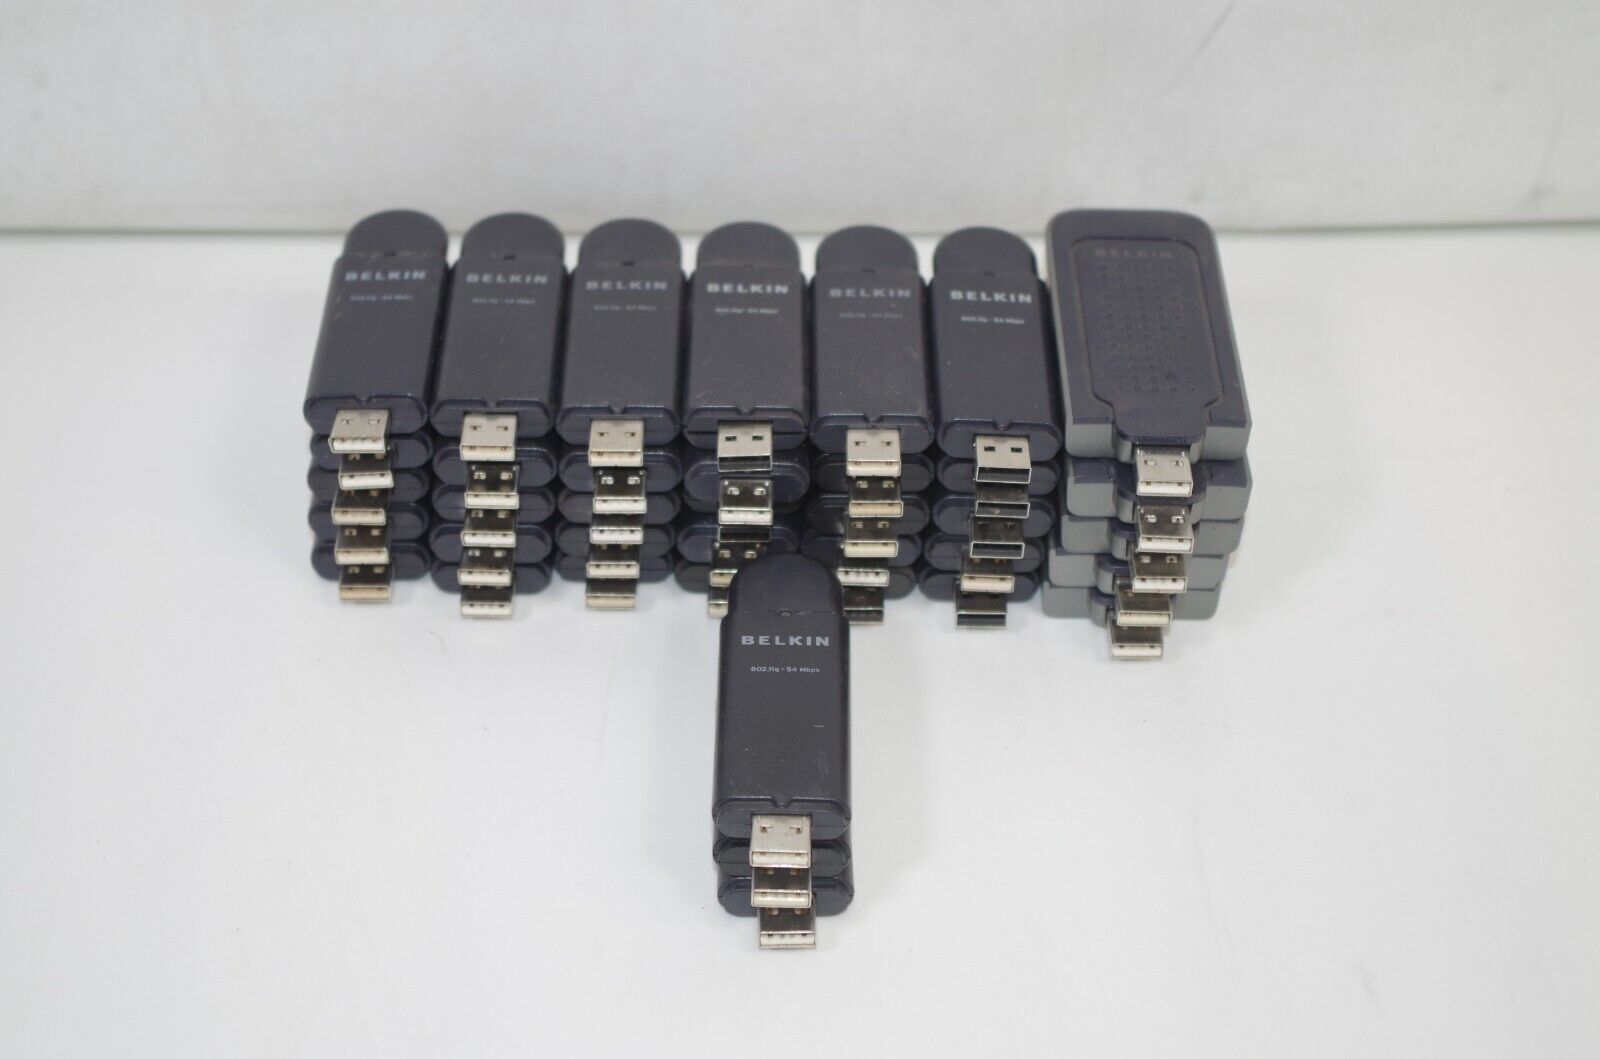 Lot of 38 Belkin Wireless G USB Network Adapters 